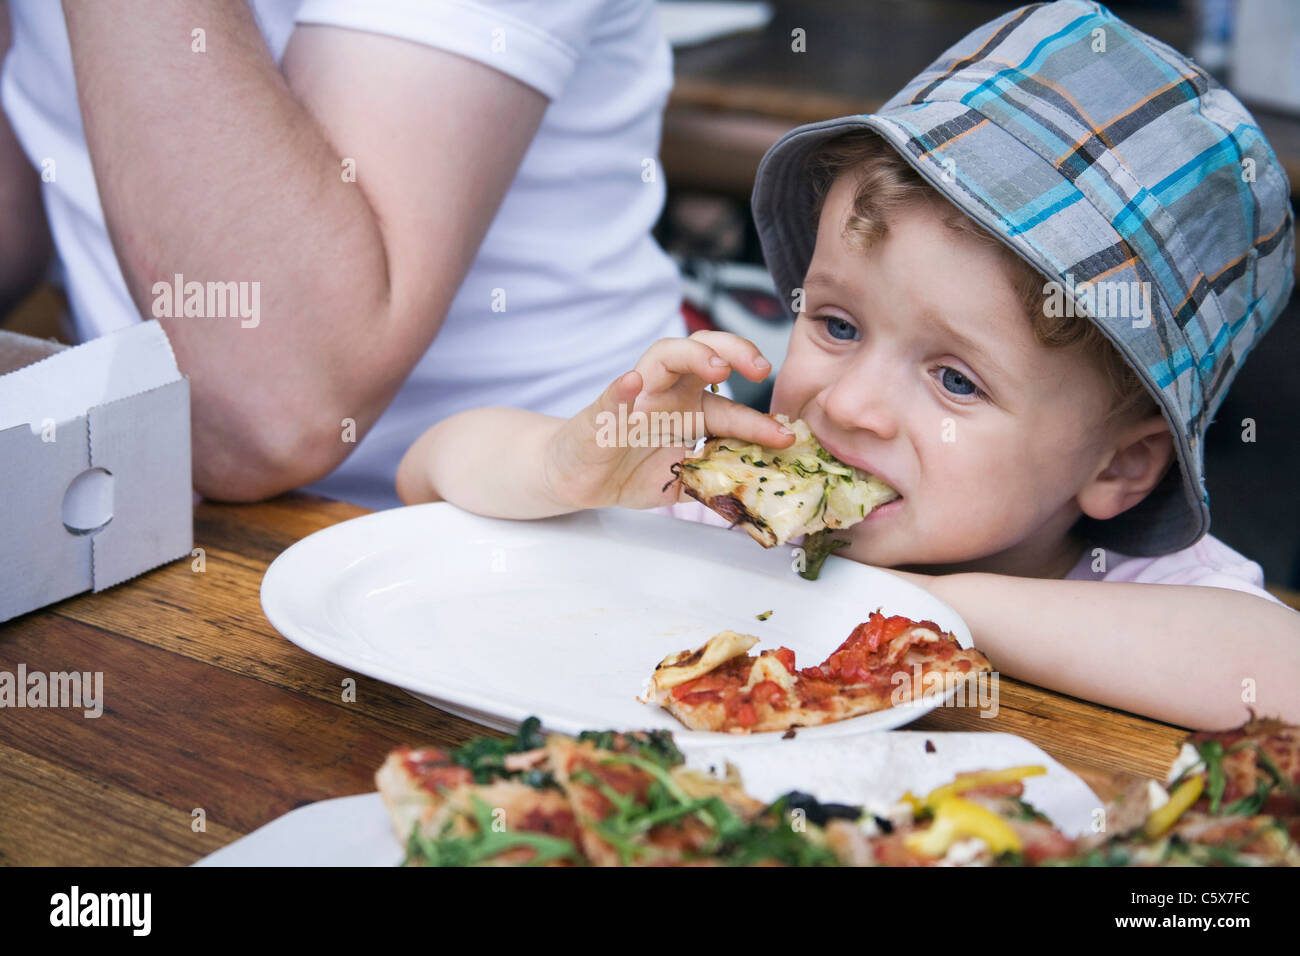 Germania, Berlino, ragazzo (3-4) mangiando pezzi di pizza all'aperto, ritratto Foto Stock